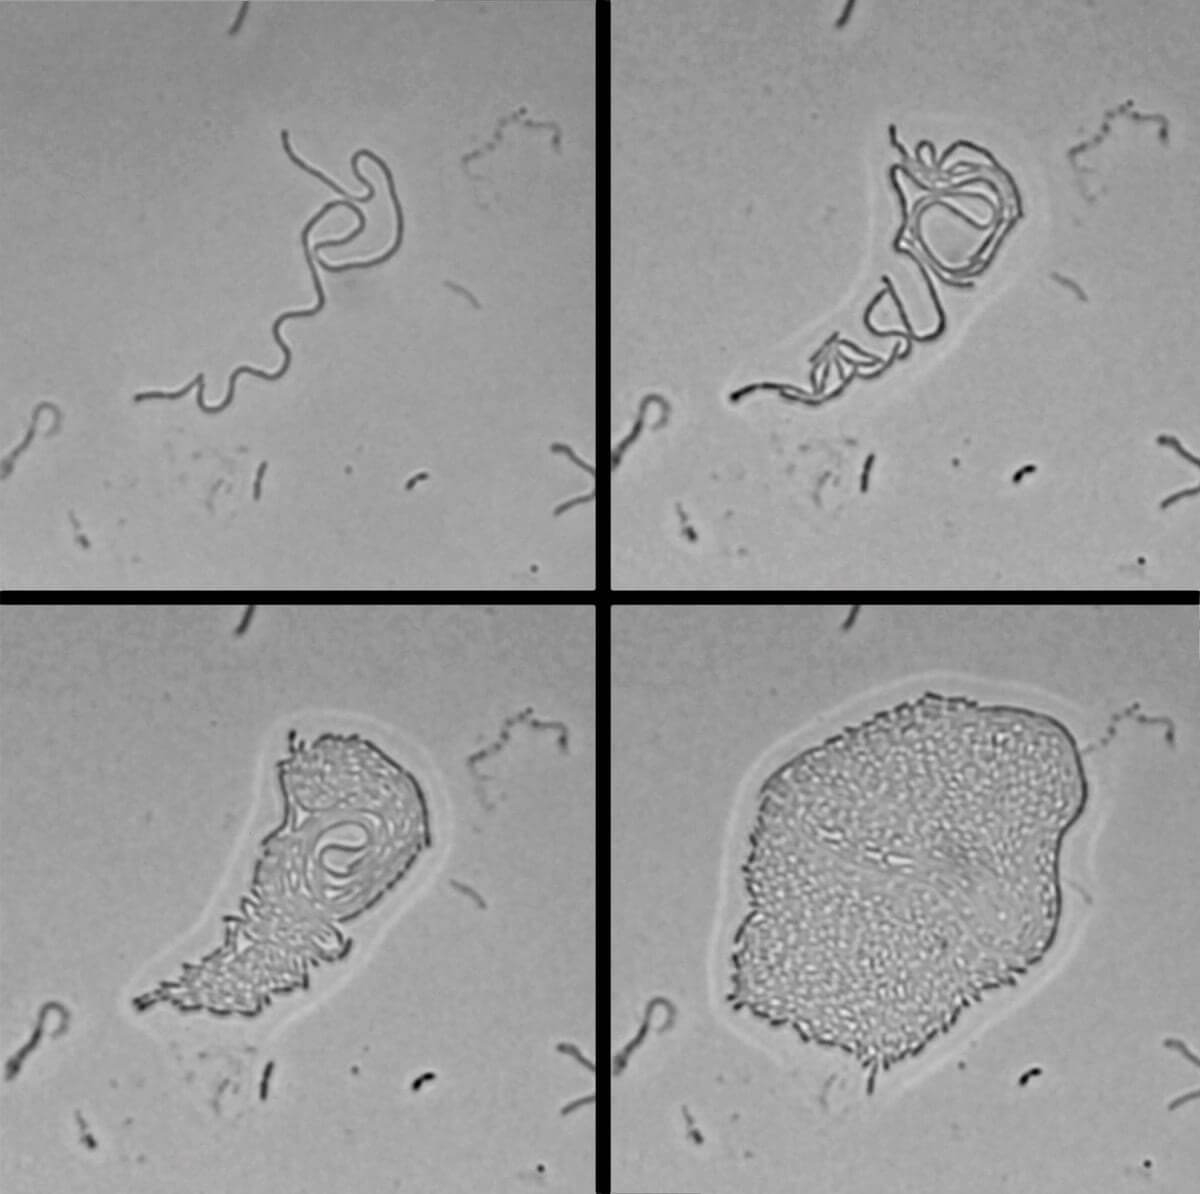 Новые для науки бактерии с уникальным навыком. Бактерии HS-3 сначала собираются в линию, а потом превращаются в нечто, похожее на многоклеточный организм. Фото.